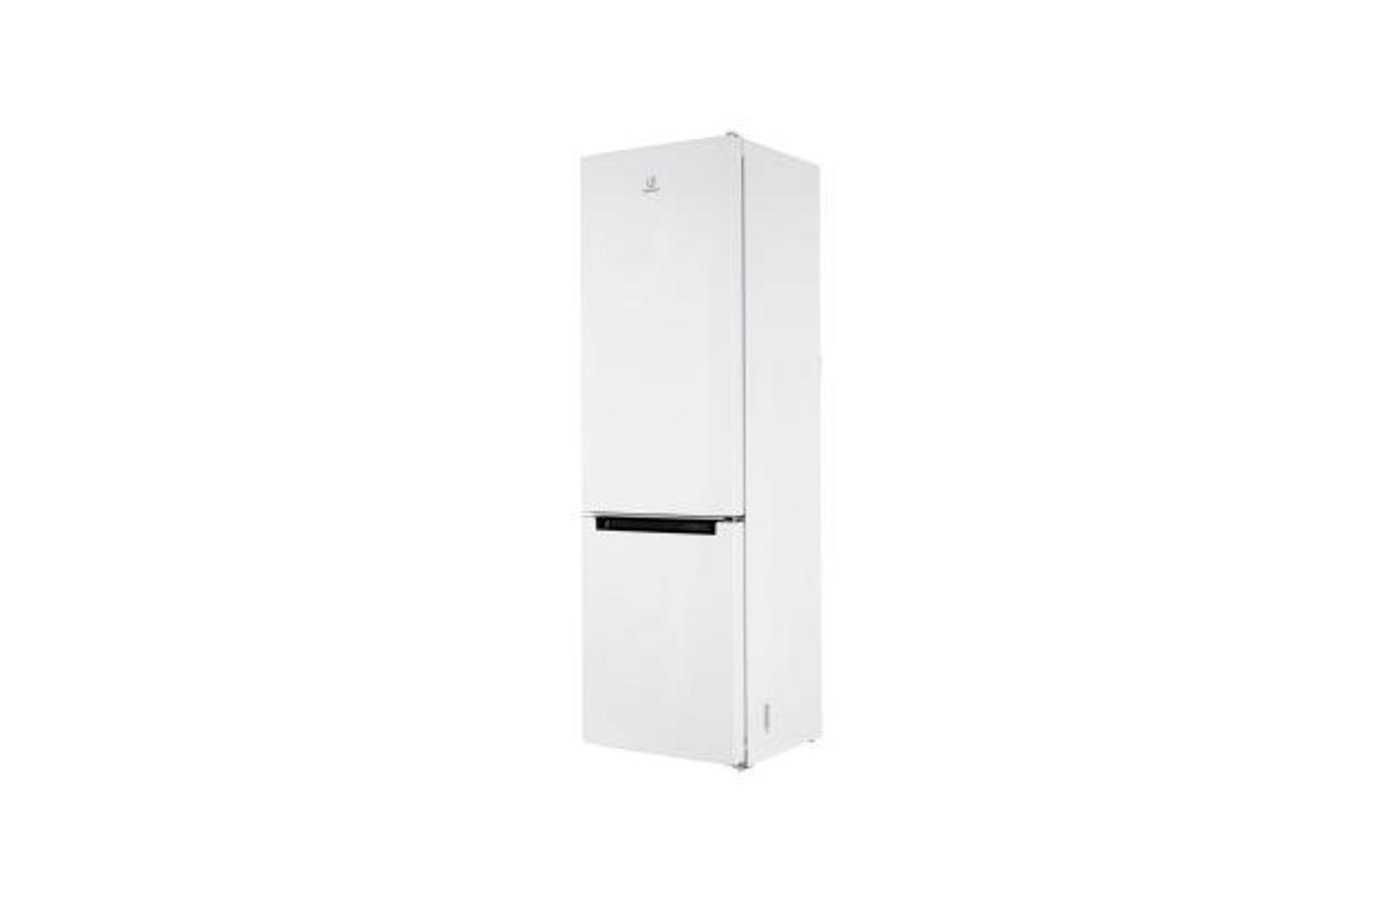 Холодильник Indesit DF 4180 W Доставка Бесплатная Гарантия 3/10 лет